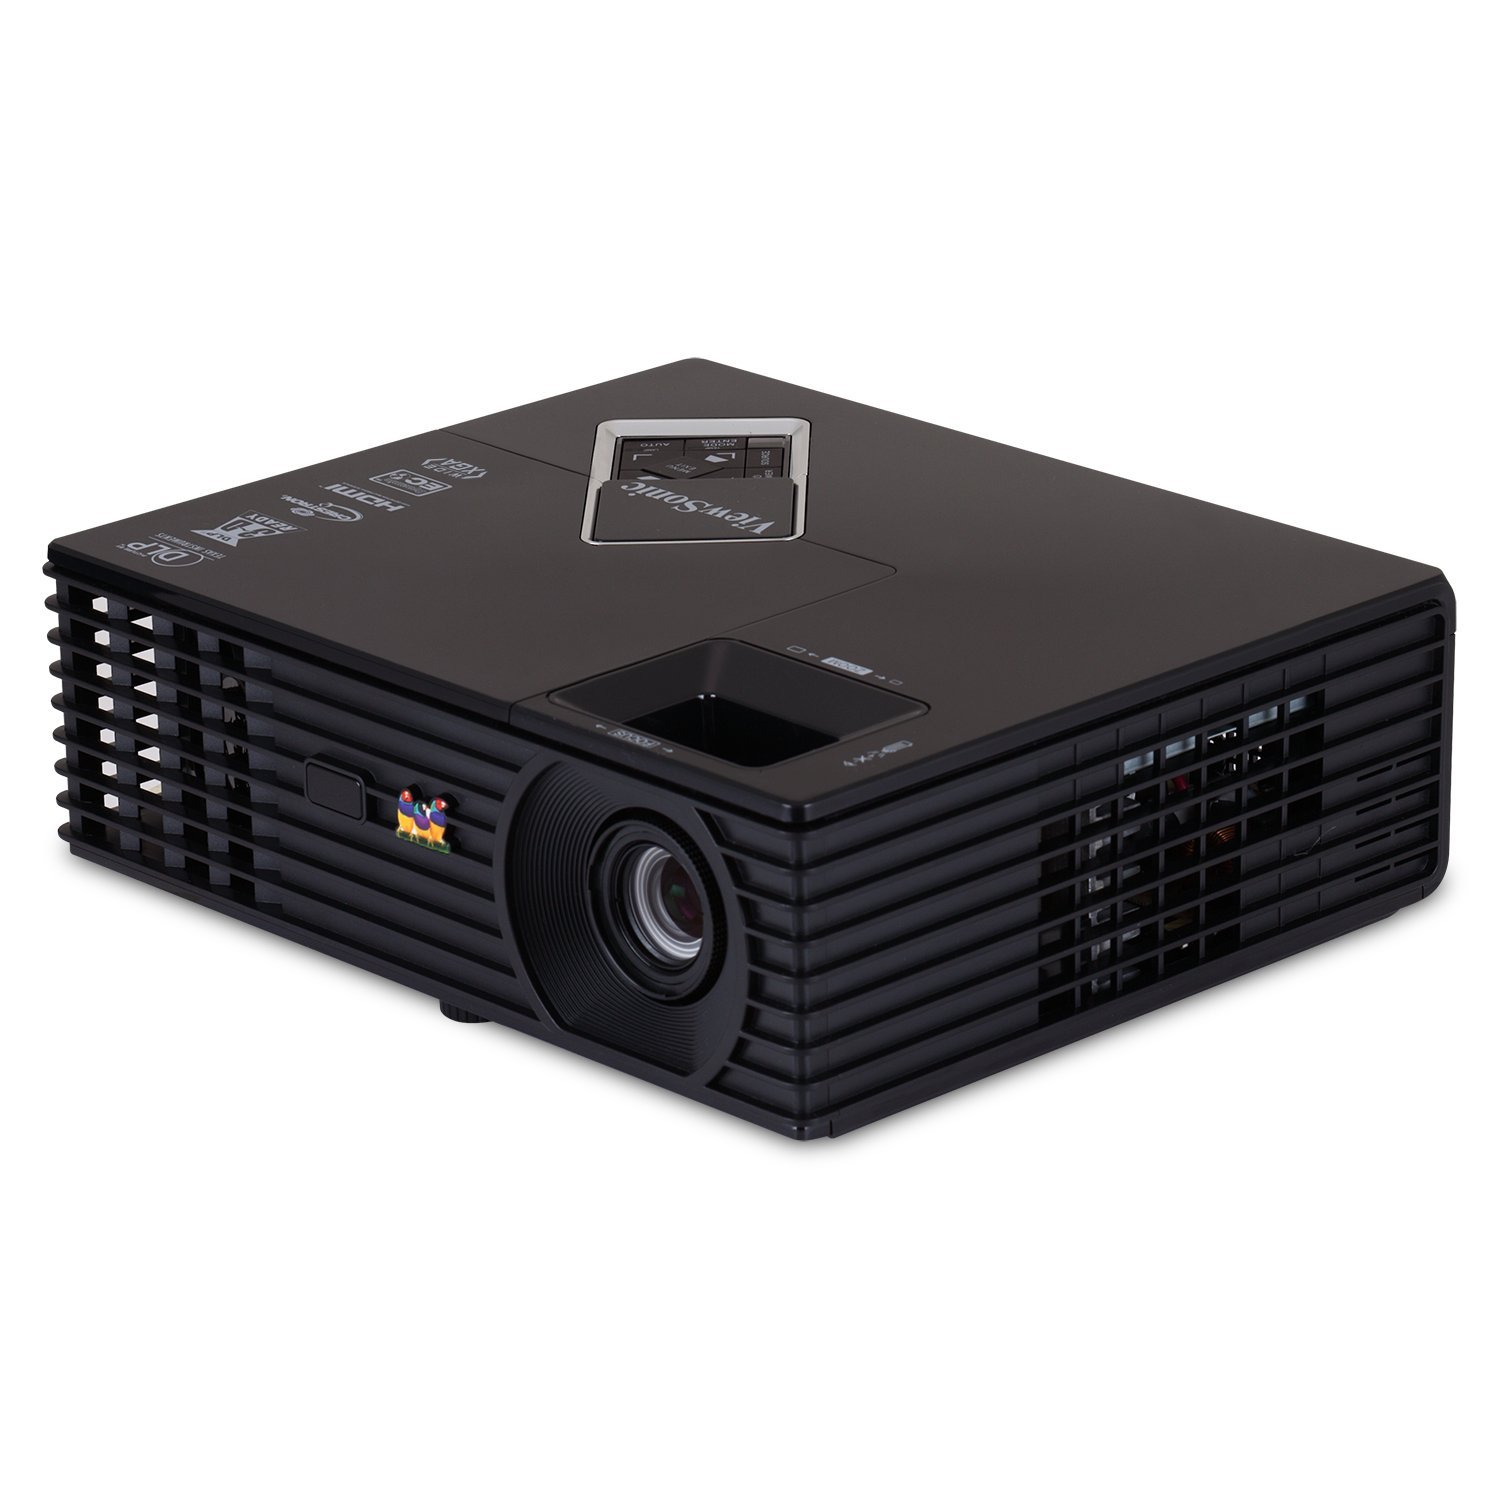 Ảnh Máy chiếu Viewsonic PJD6543w 3D,HD tốt nhất giá rẻ